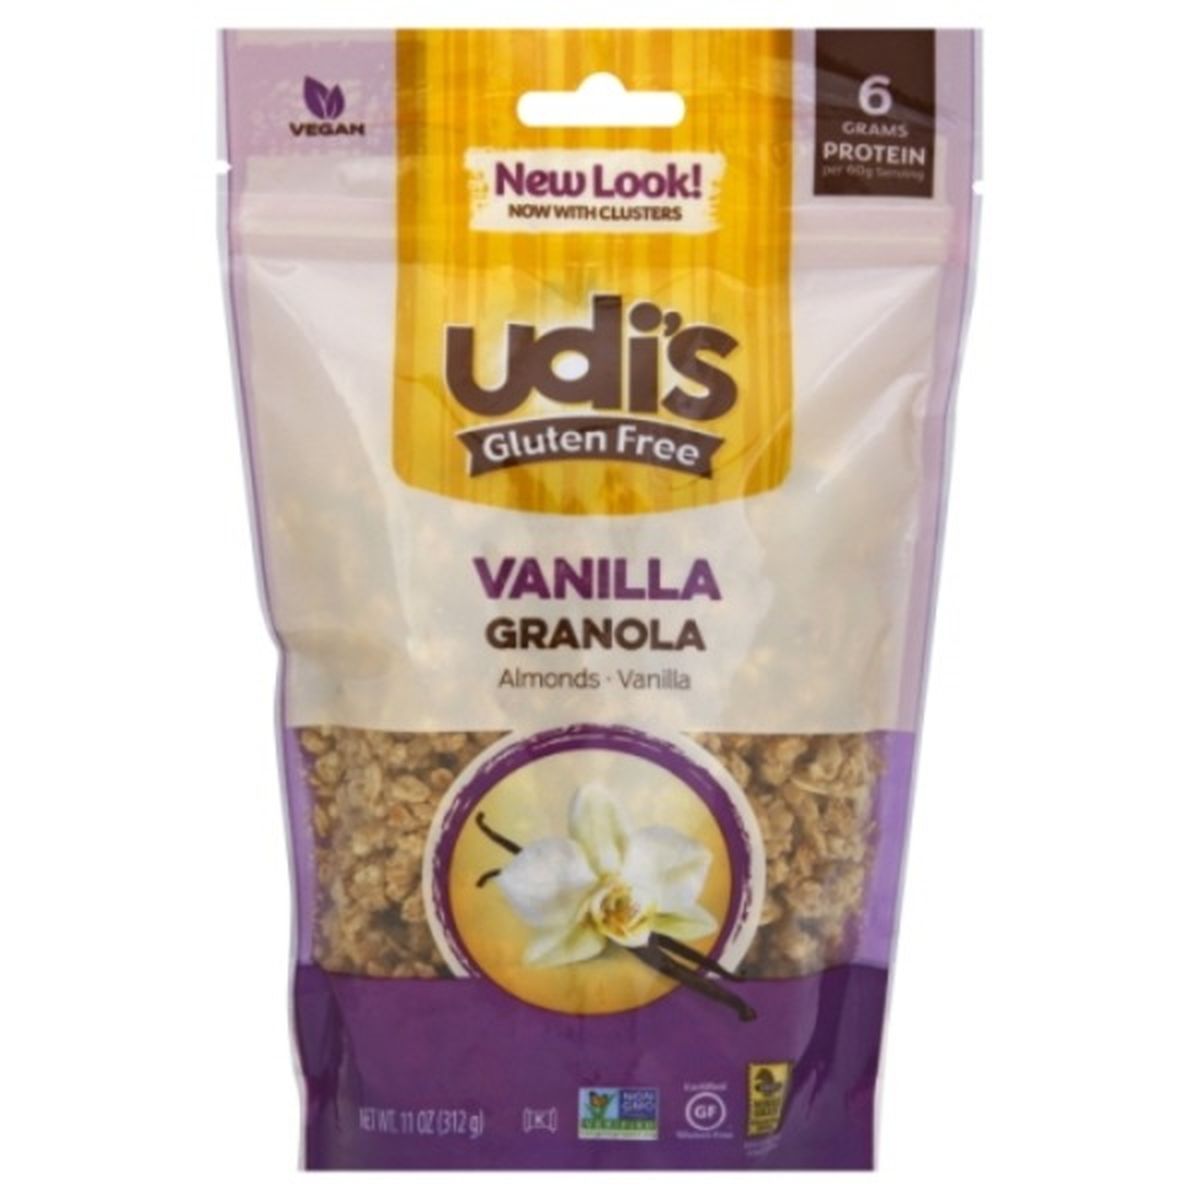 Calories in Udi's Granola, Vanilla